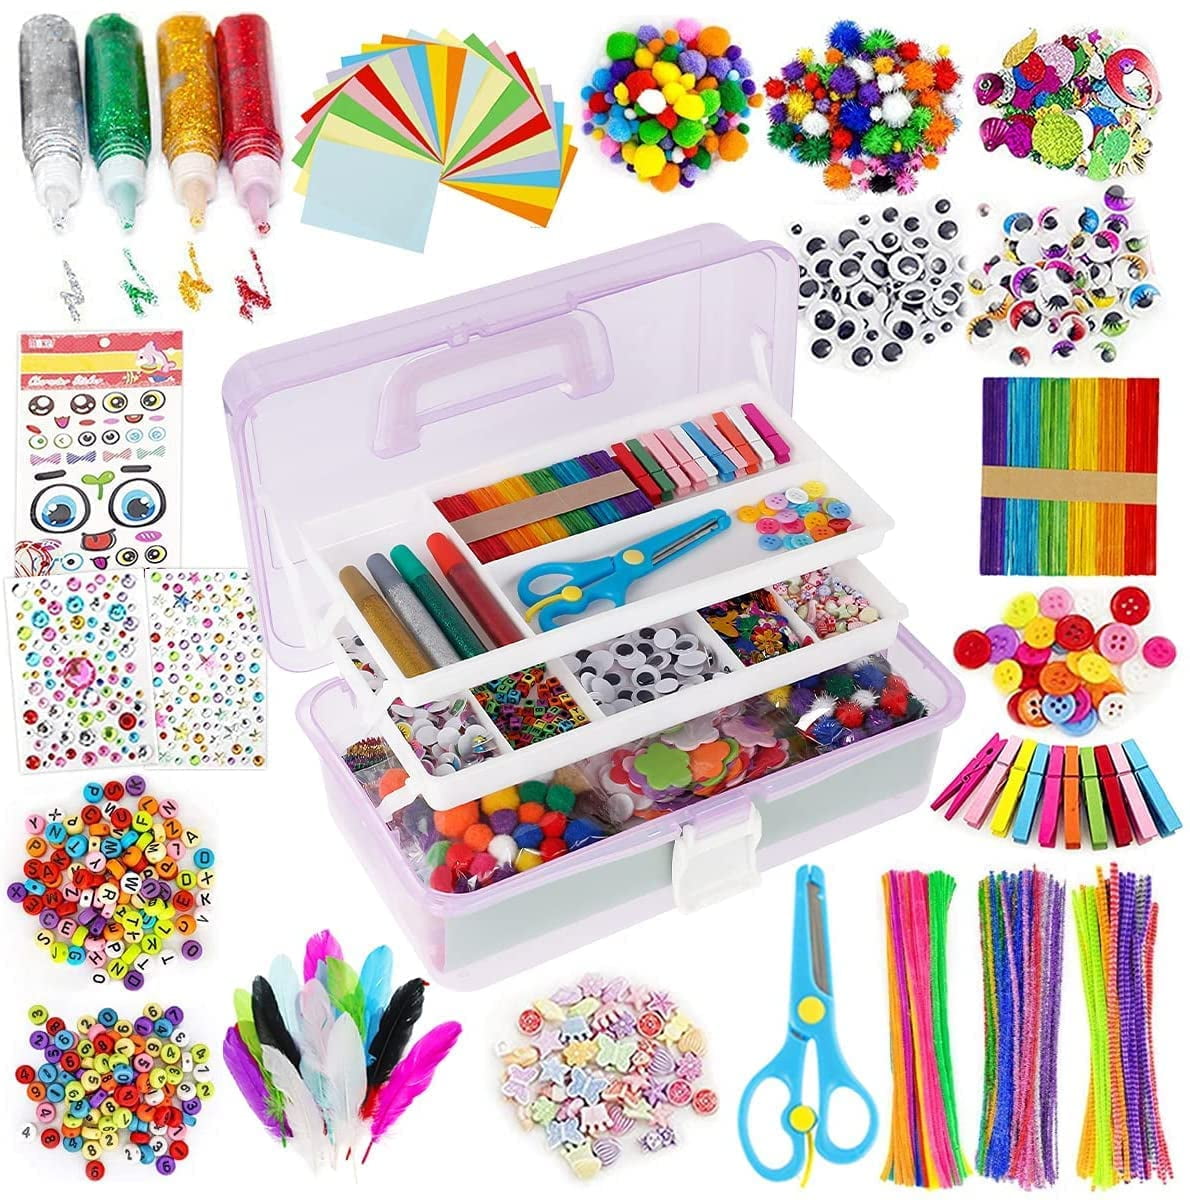 Nyidpsz 1000 Pcs DIY Art Craft Kit Art Craft Kit Supplies Art and